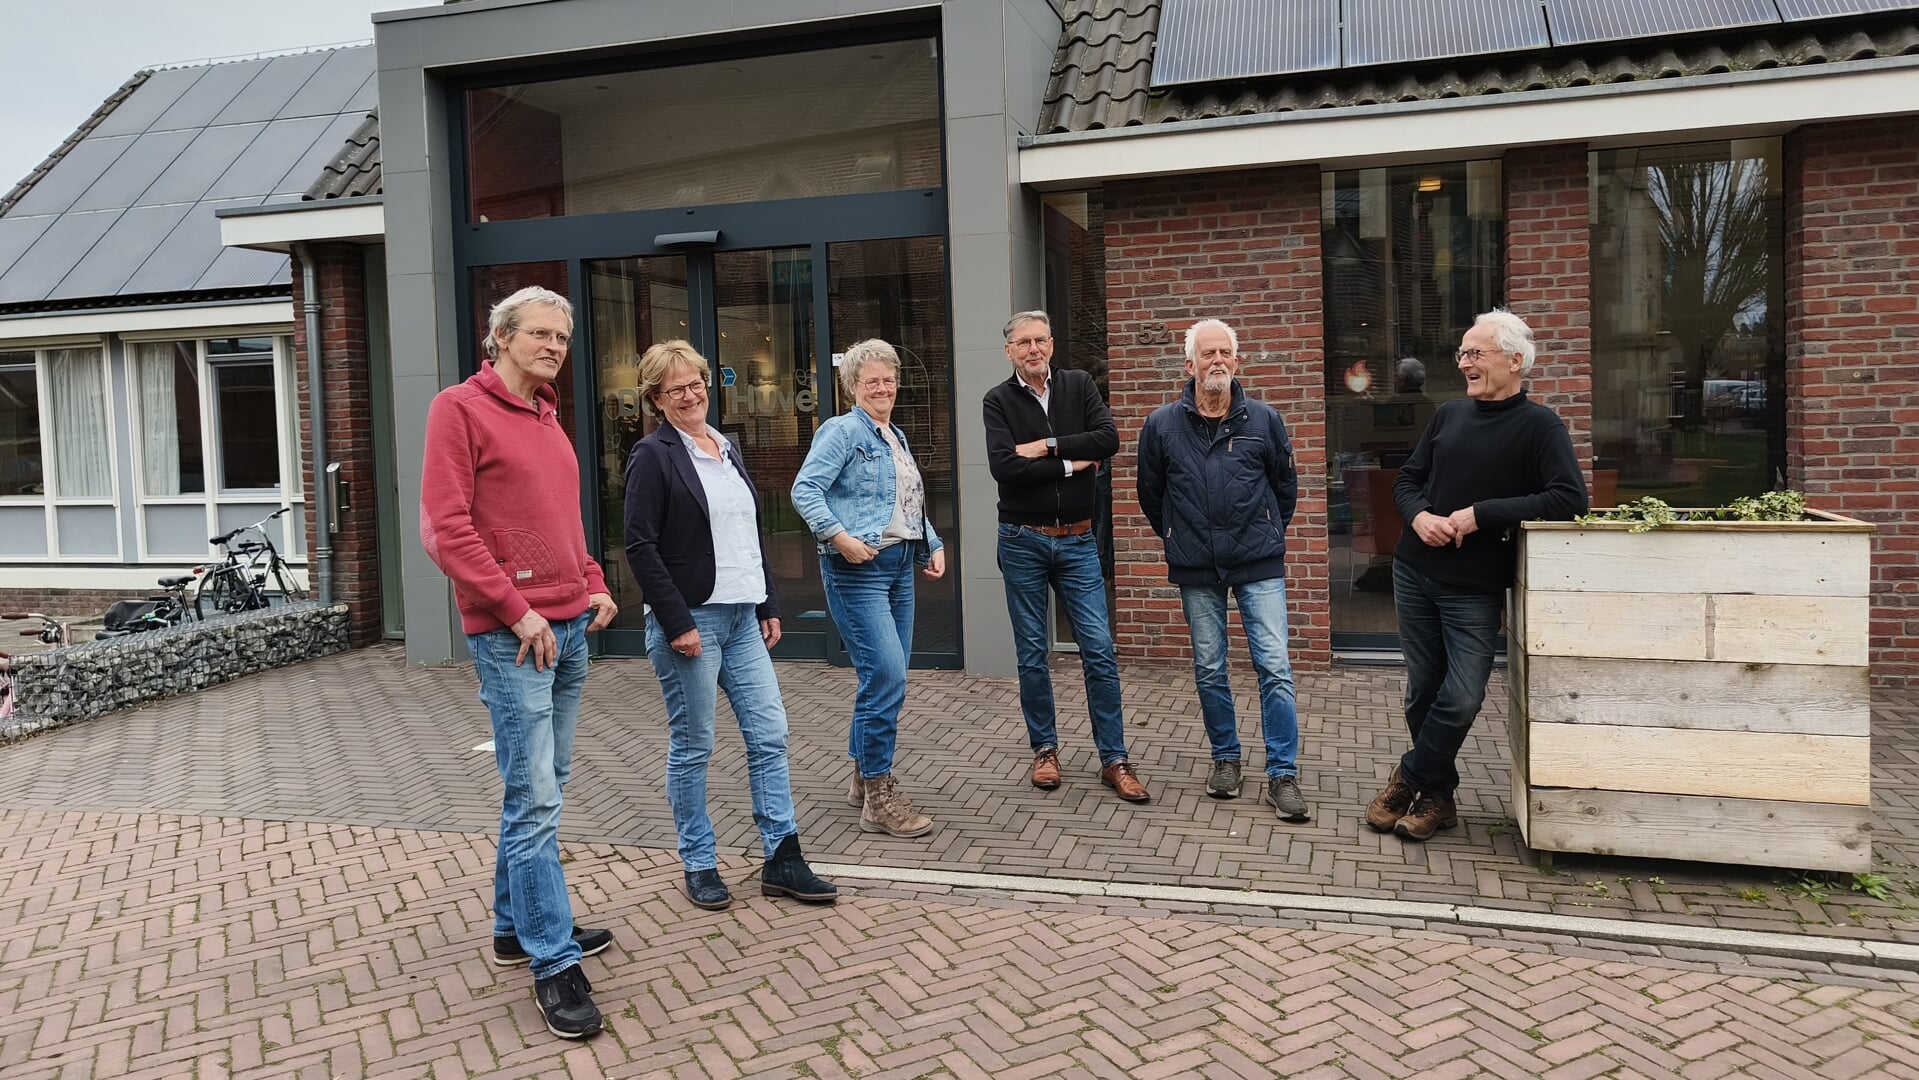 Peter van Heek, Albertine van der Berg, Henny Tuut, Pieter Gerdanus, Bert Vogel en Bert Westhuis Komen in actie voor behoud van de Huve. Foto: Rob Stevens